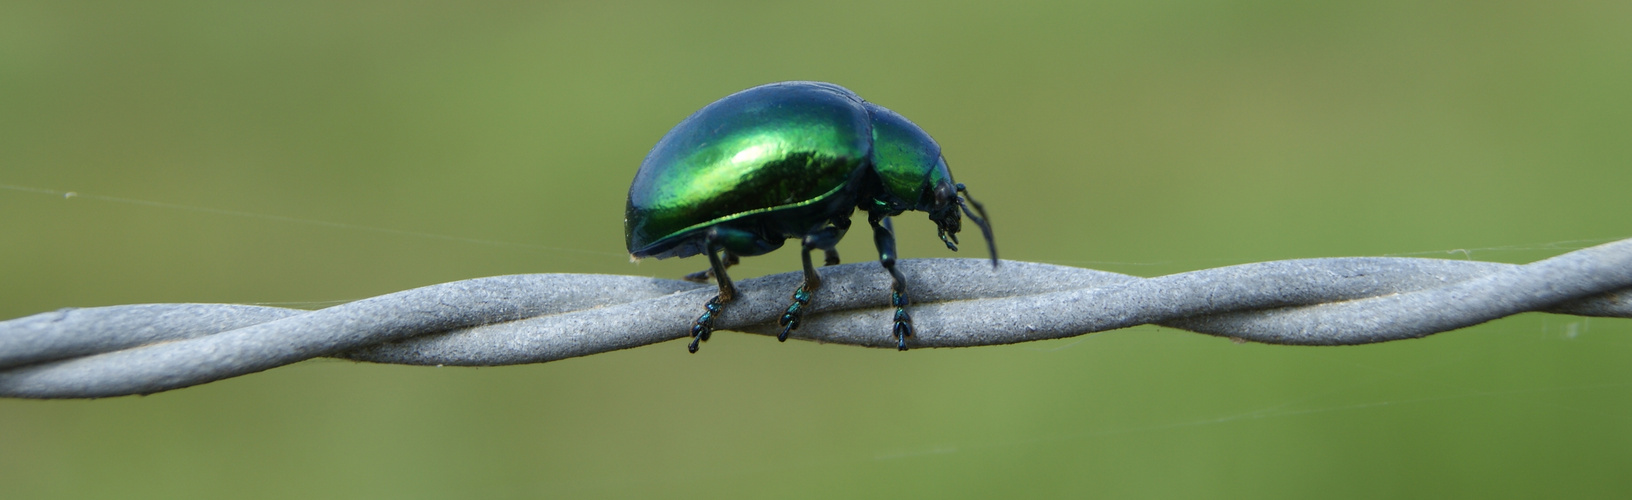 Escarabajo verde-azulado